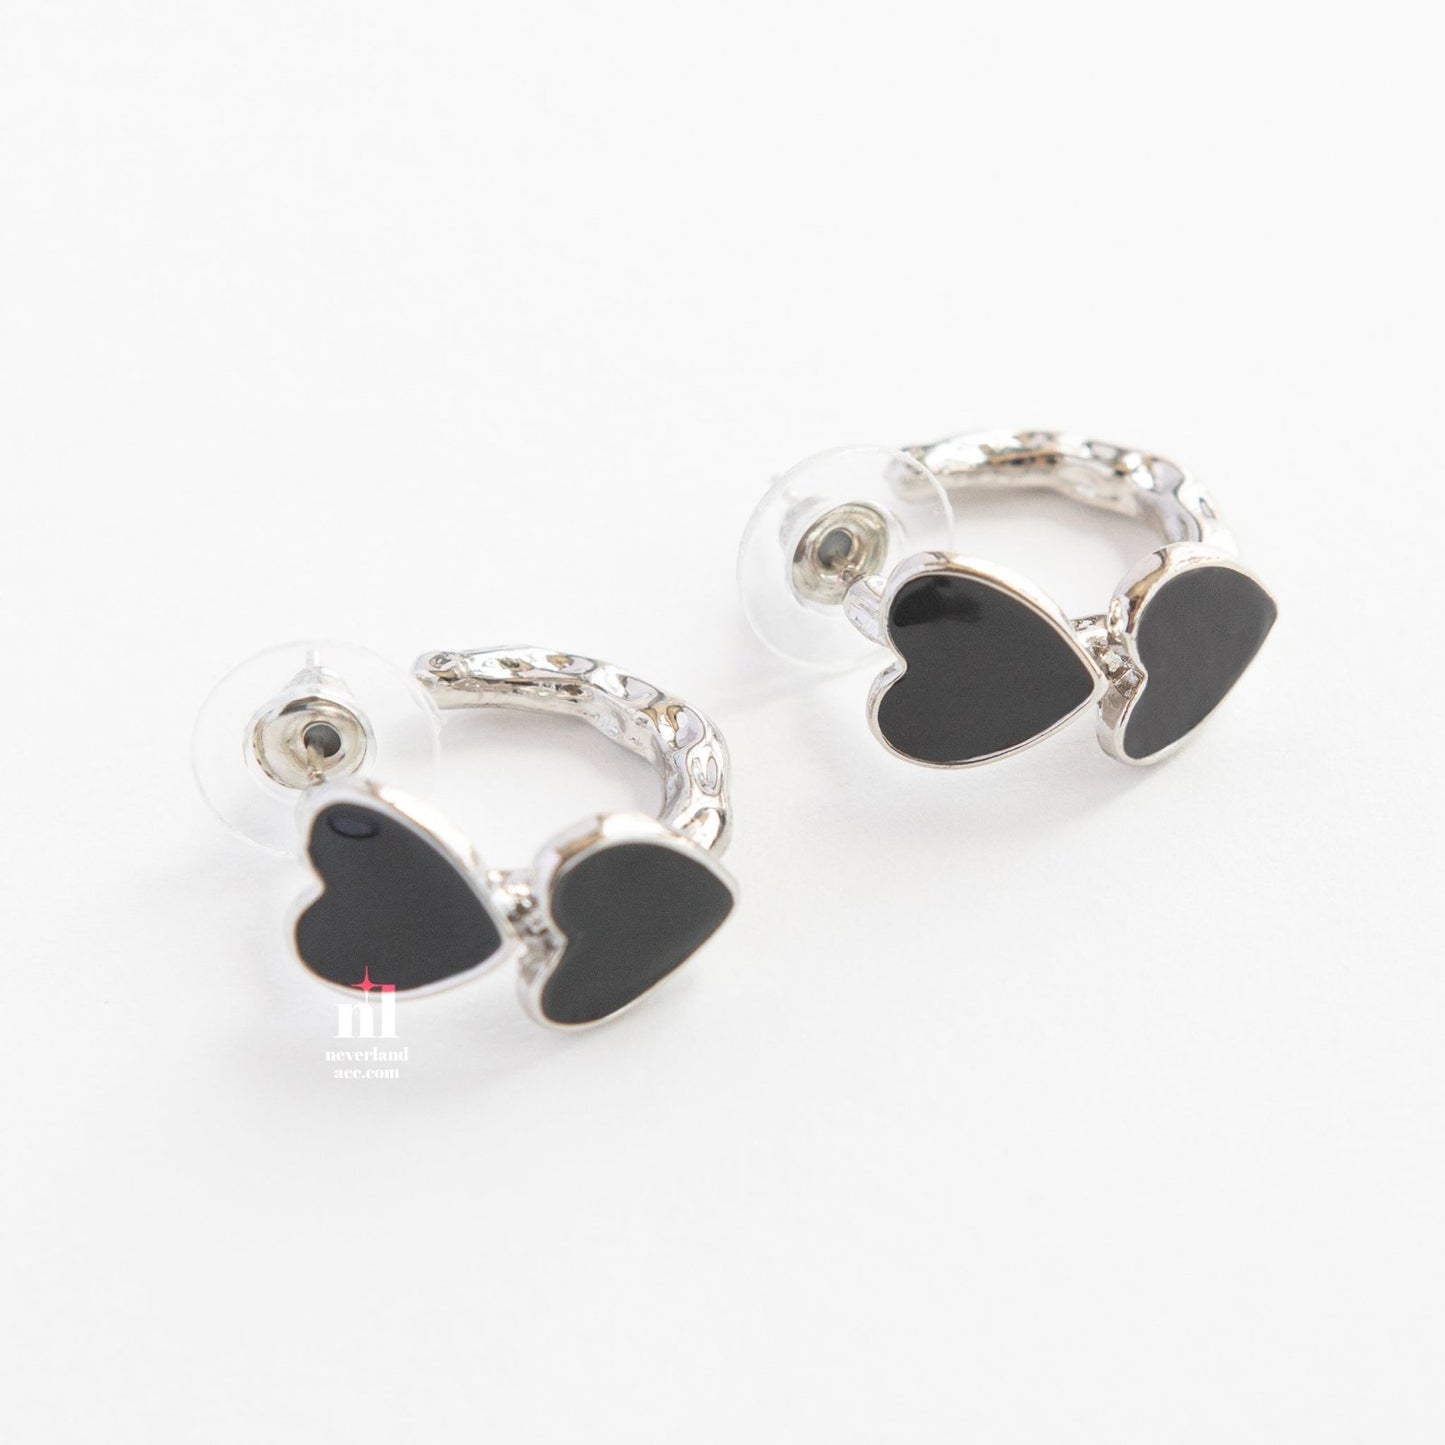 Black Heart Pendant Hoop Earrings - neverland accessories